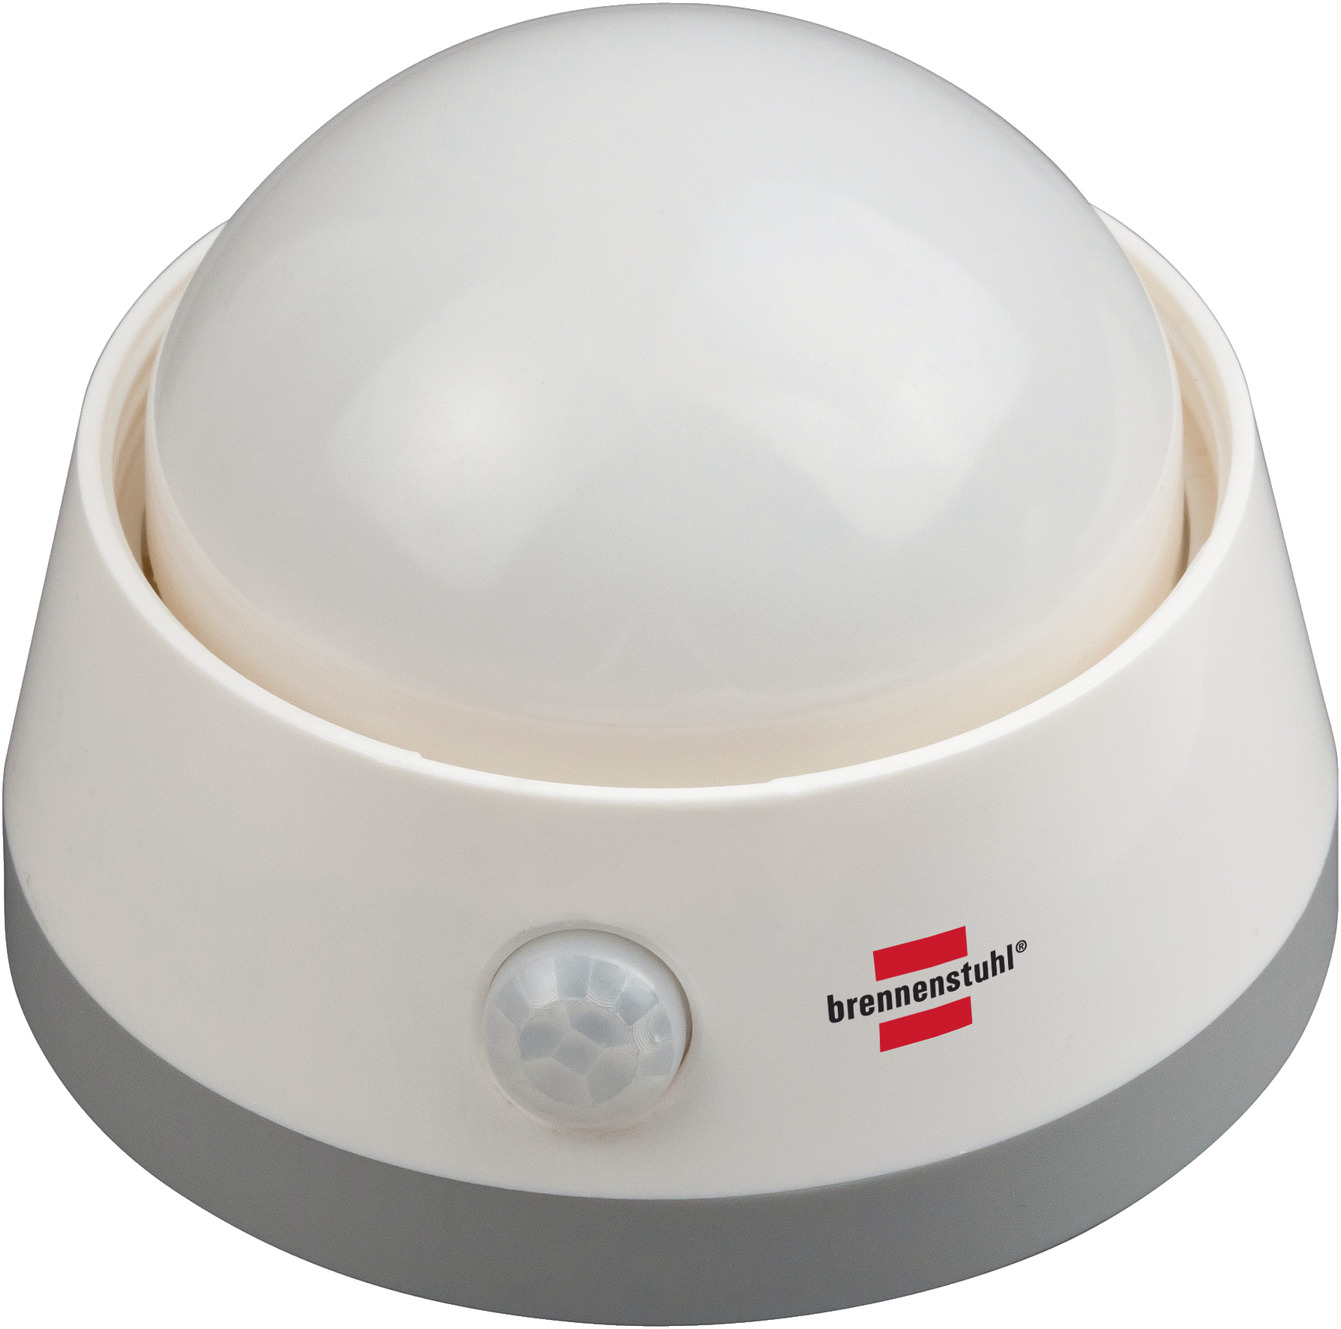 Batterie LED-Nachtlicht mit Infrarot-Bewegungsmelder und Push-Schalter |  brennenstuhl®